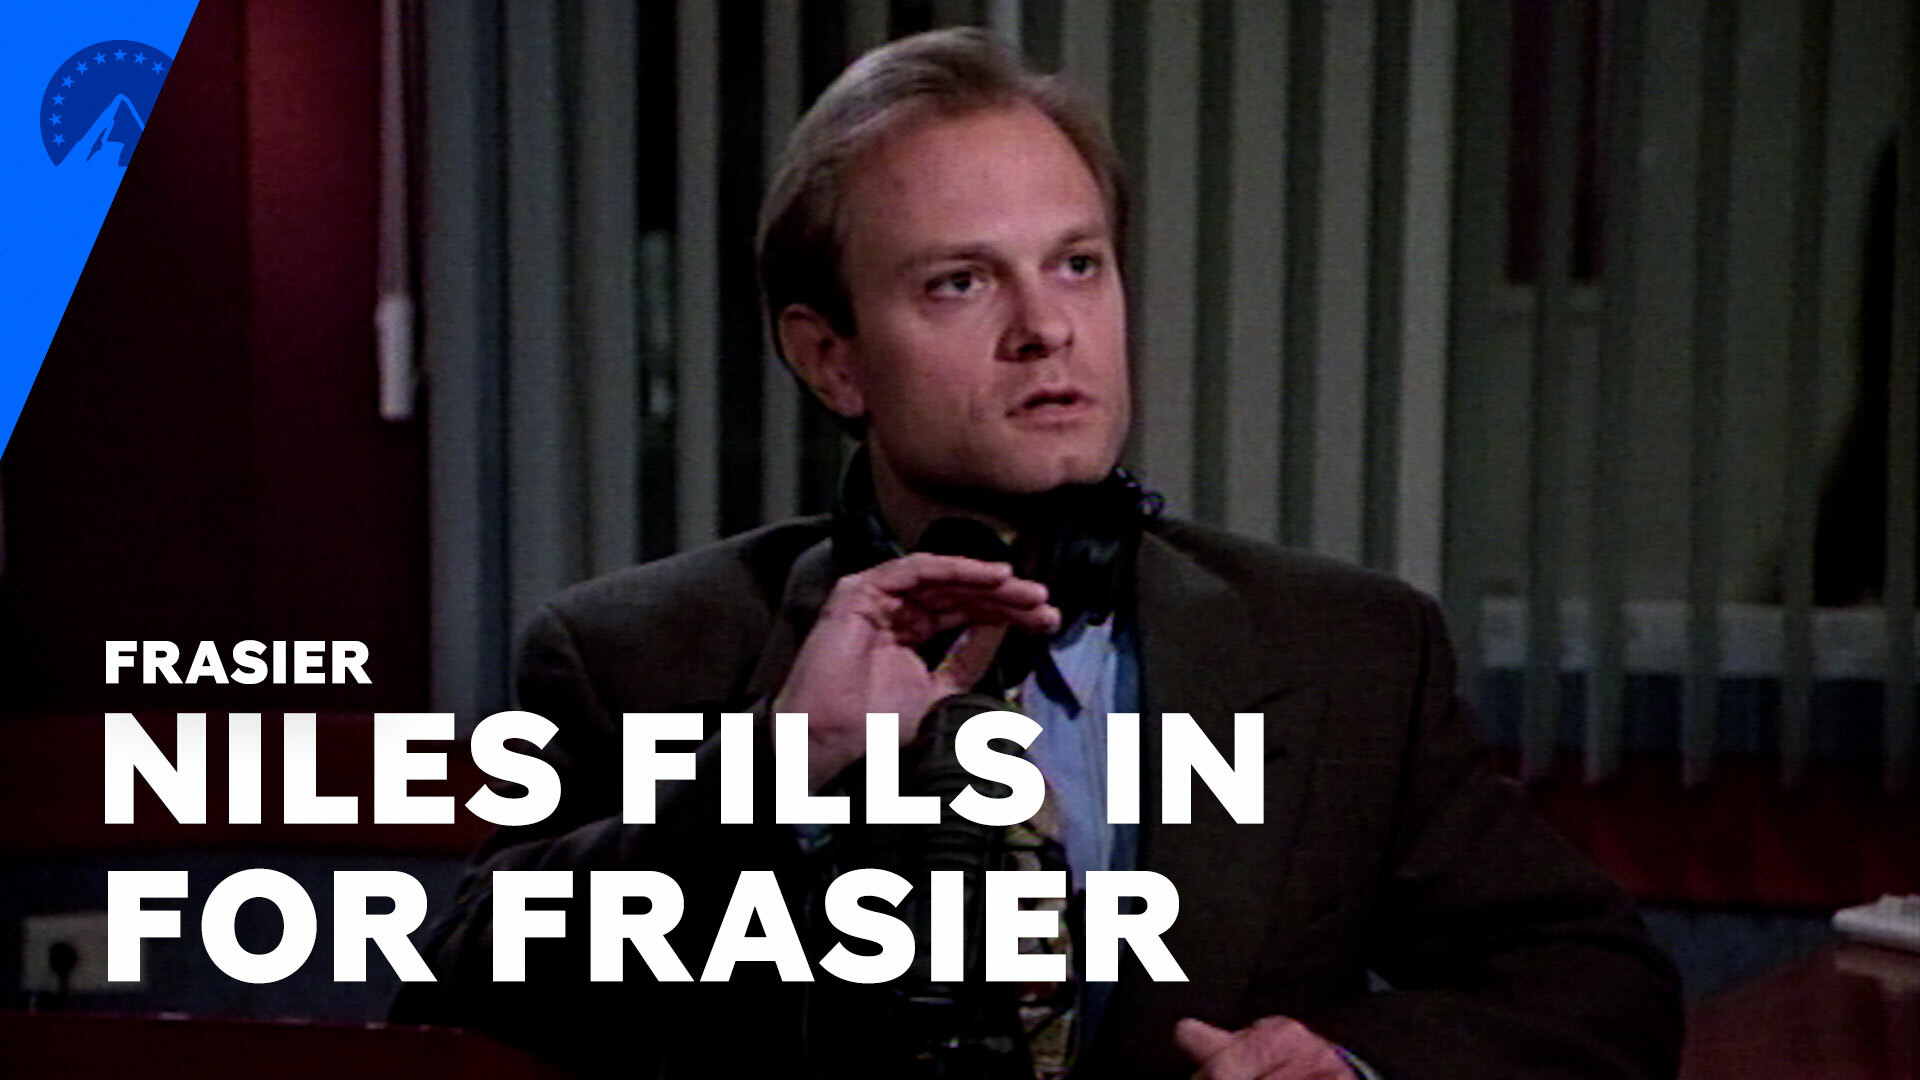 Watch Frasier: Frasier | Niles Fills In On Frasier's Radio Show (S1, E23) |  Paramount+ - Full show on Paramount Plus